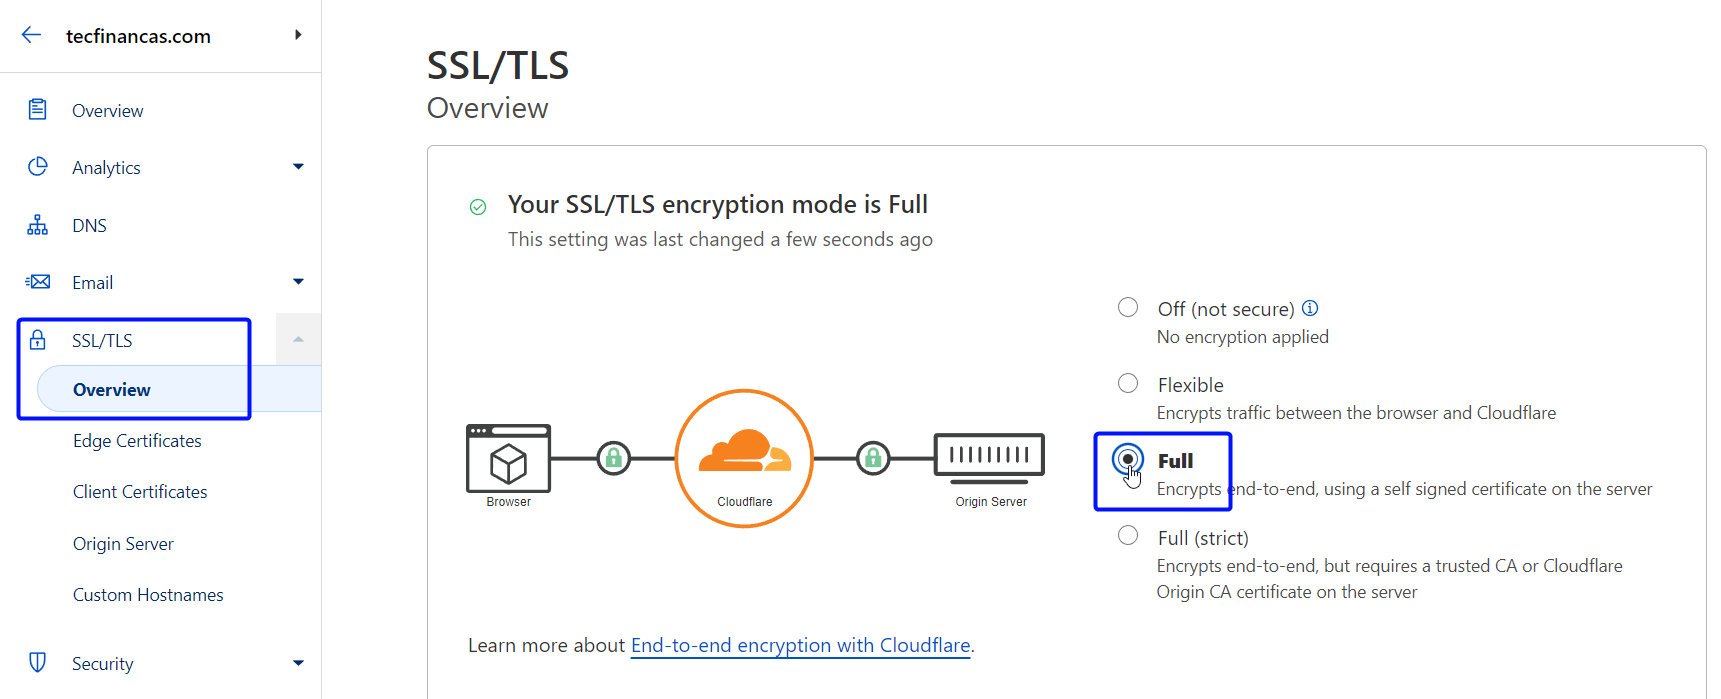 Escolha a opção 'Full' no menu 'SSL/TLS' do Cloudflare